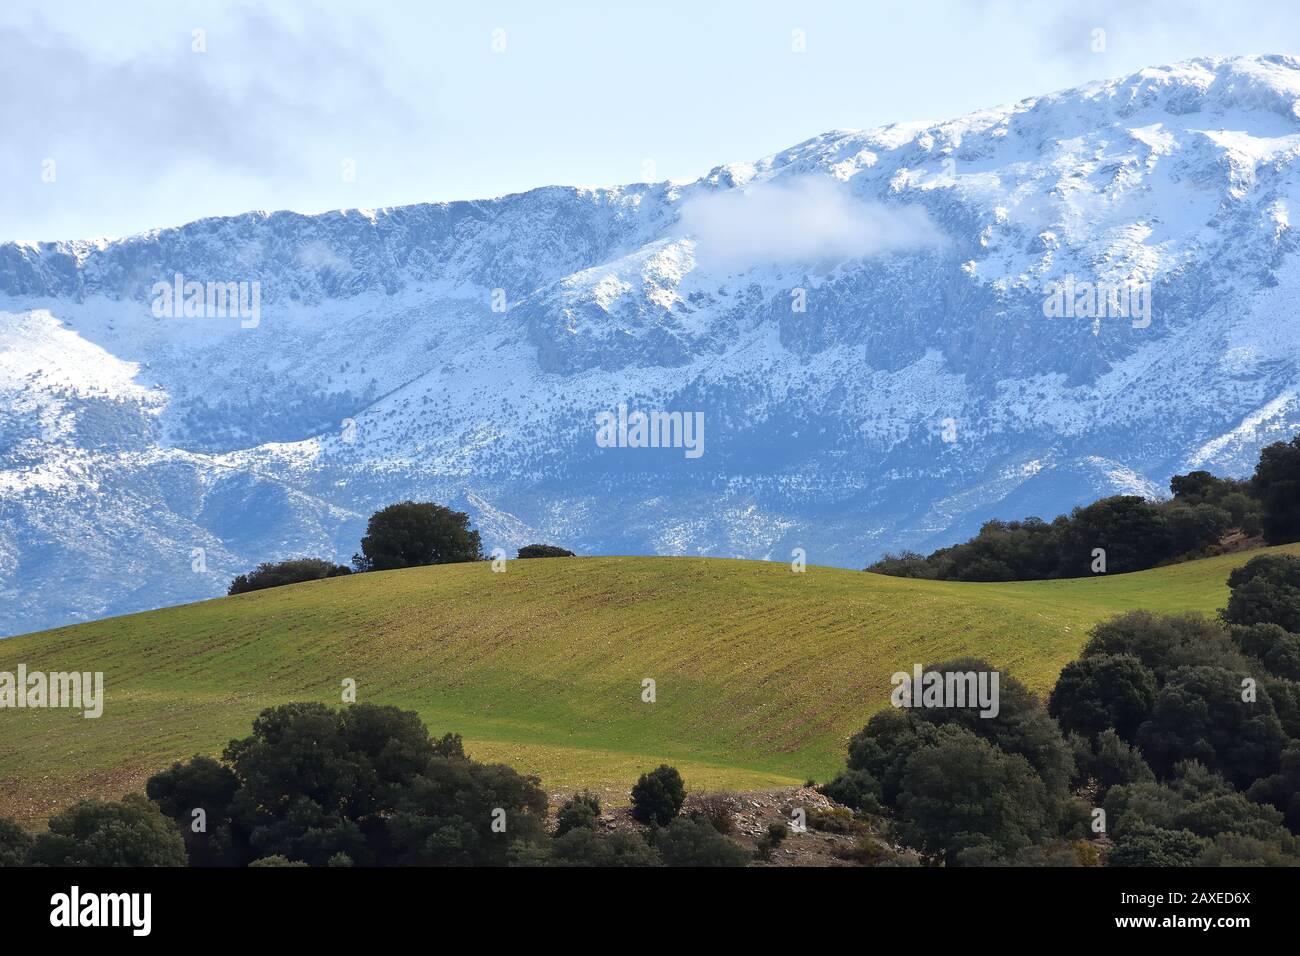 Andalusische Landschaft im Winter, mit einem grünen Hügel umgeben von Steineichen und verschneiten Bergen im Hintergrund Stockfoto